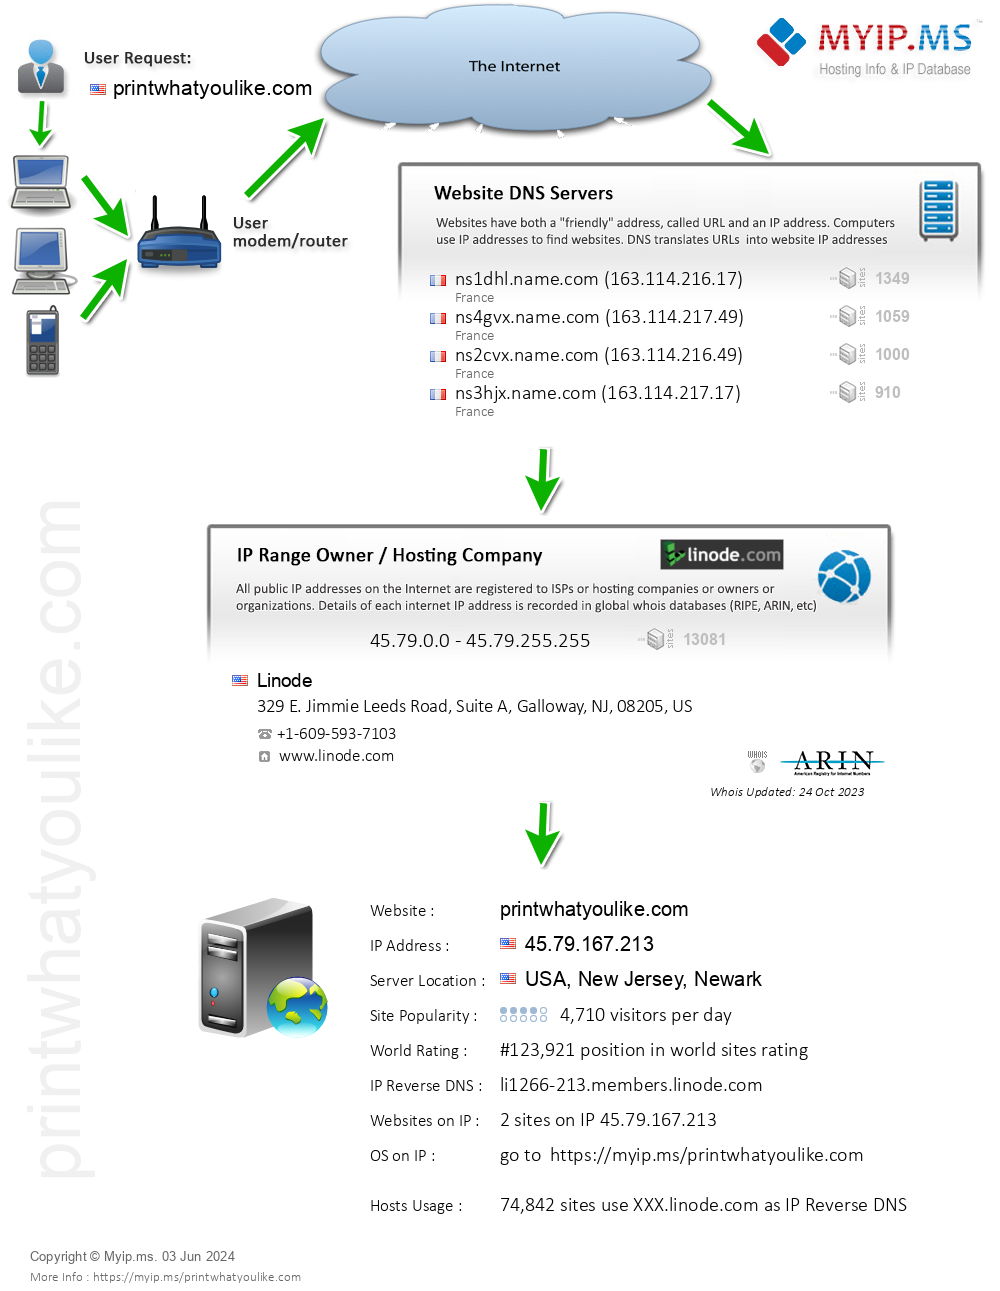 Printwhatyoulike.com - Website Hosting Visual IP Diagram